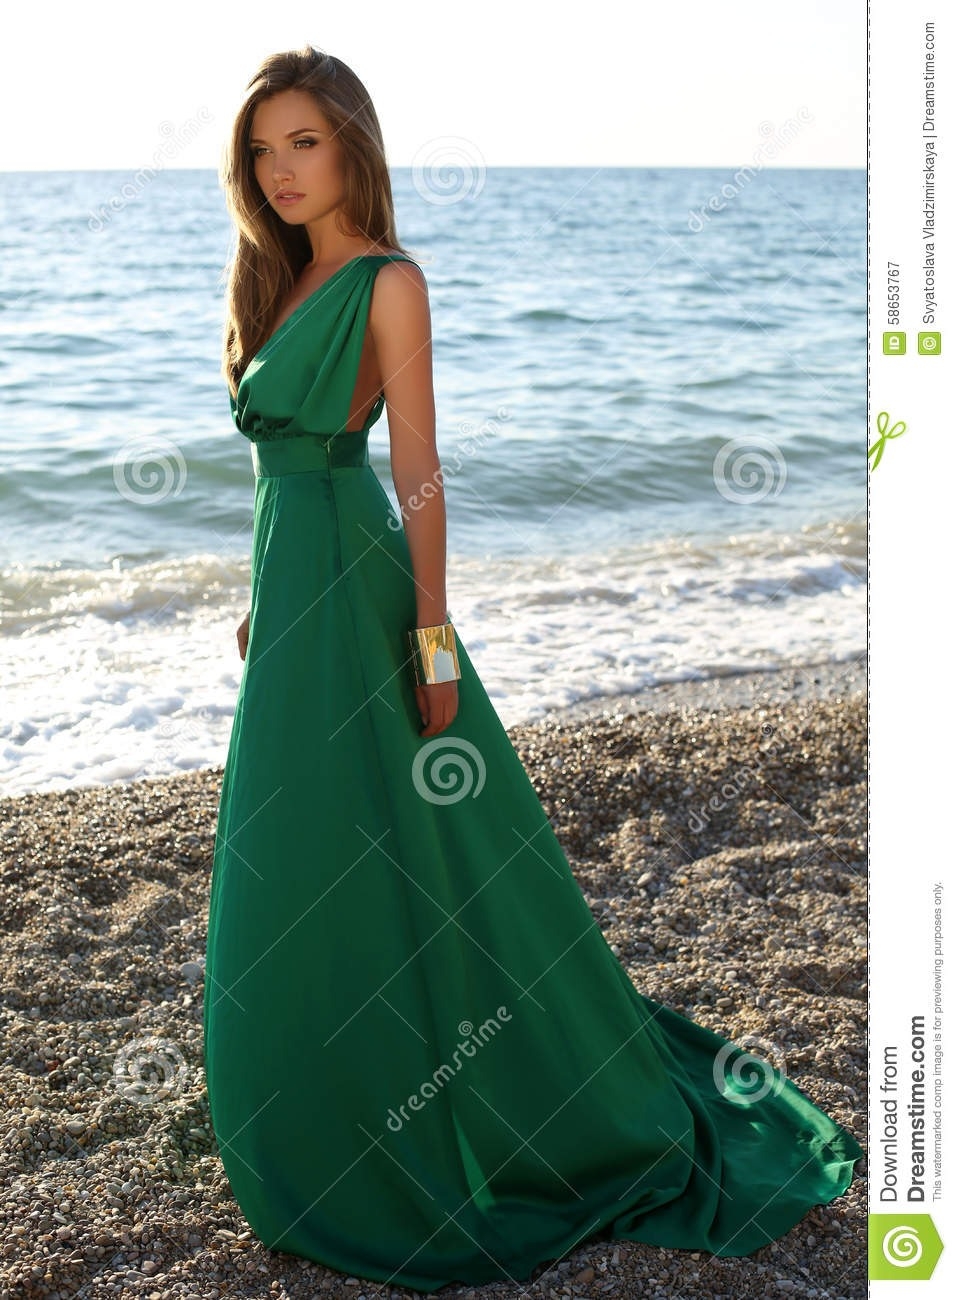 13 Leicht Schönes Grünes Kleid Bester Preis Fantastisch Schönes Grünes Kleid Spezialgebiet